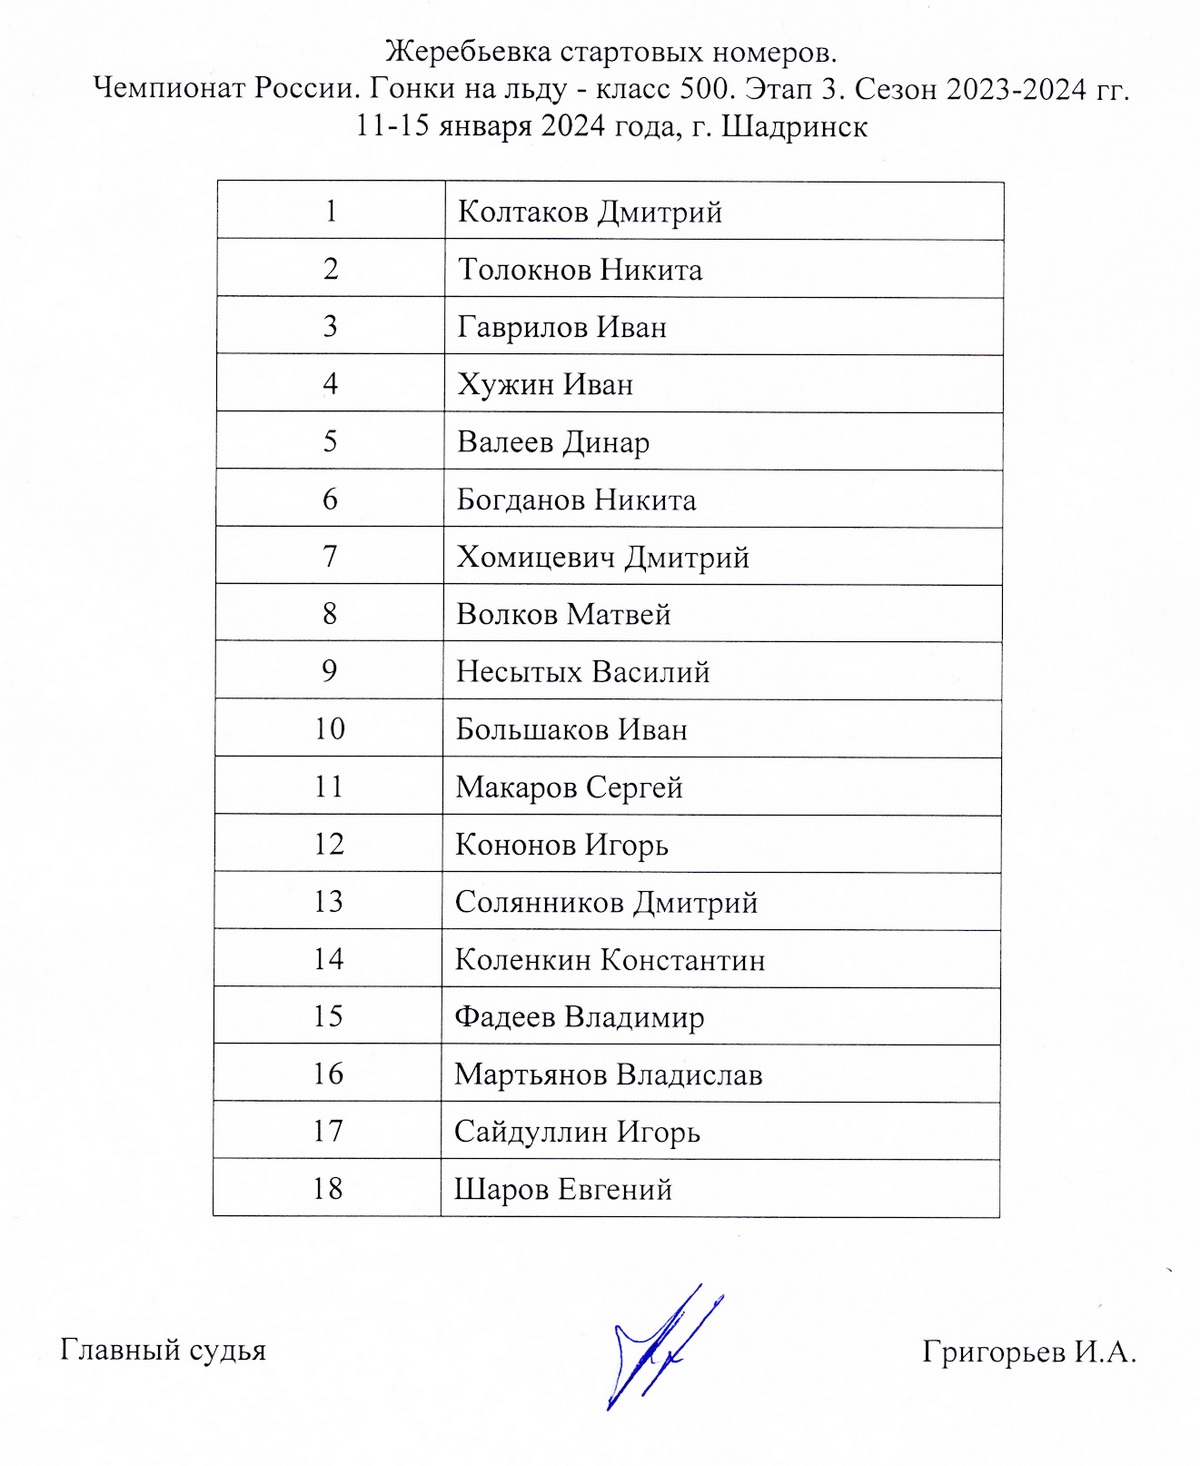 Список и стартовые номера мотогонщиков 3 этап ЛЧР по мотогонкам на льду 2023/24, г.Шадринск